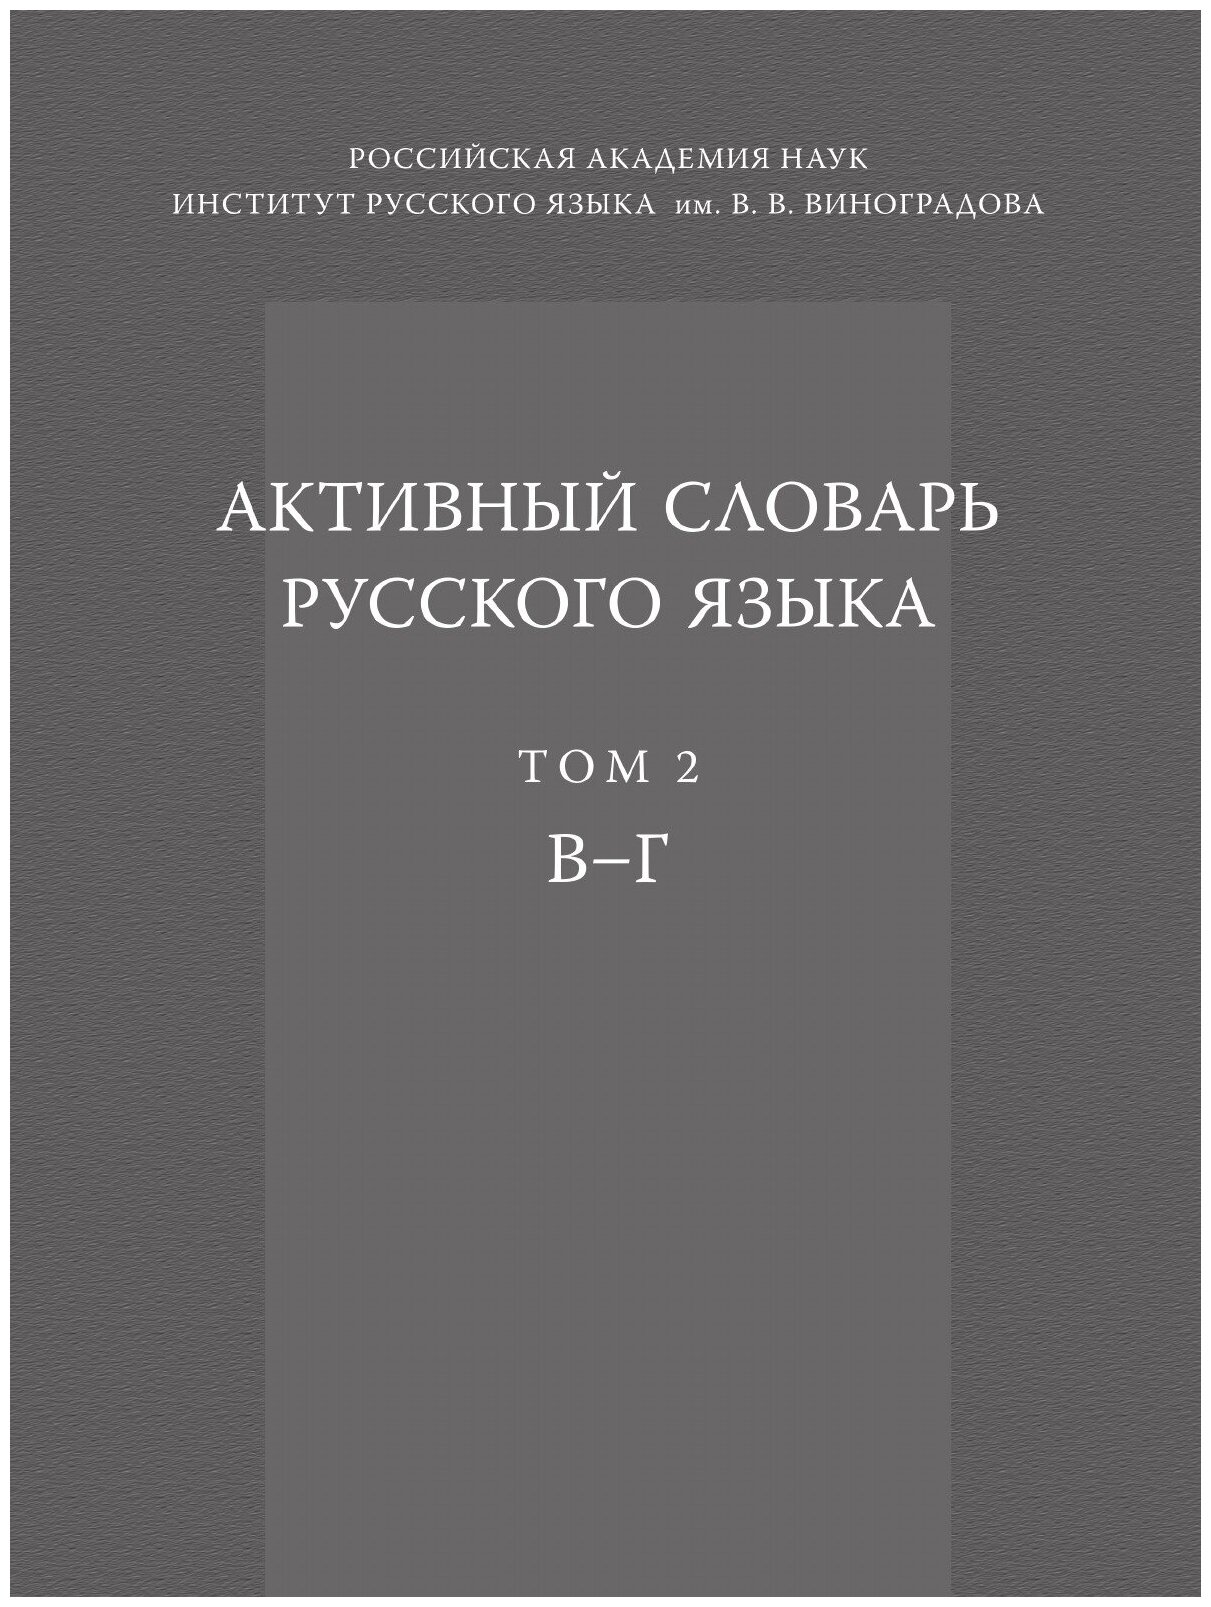 Активный словарь русского языка. Том 2. В-Г - фото №1